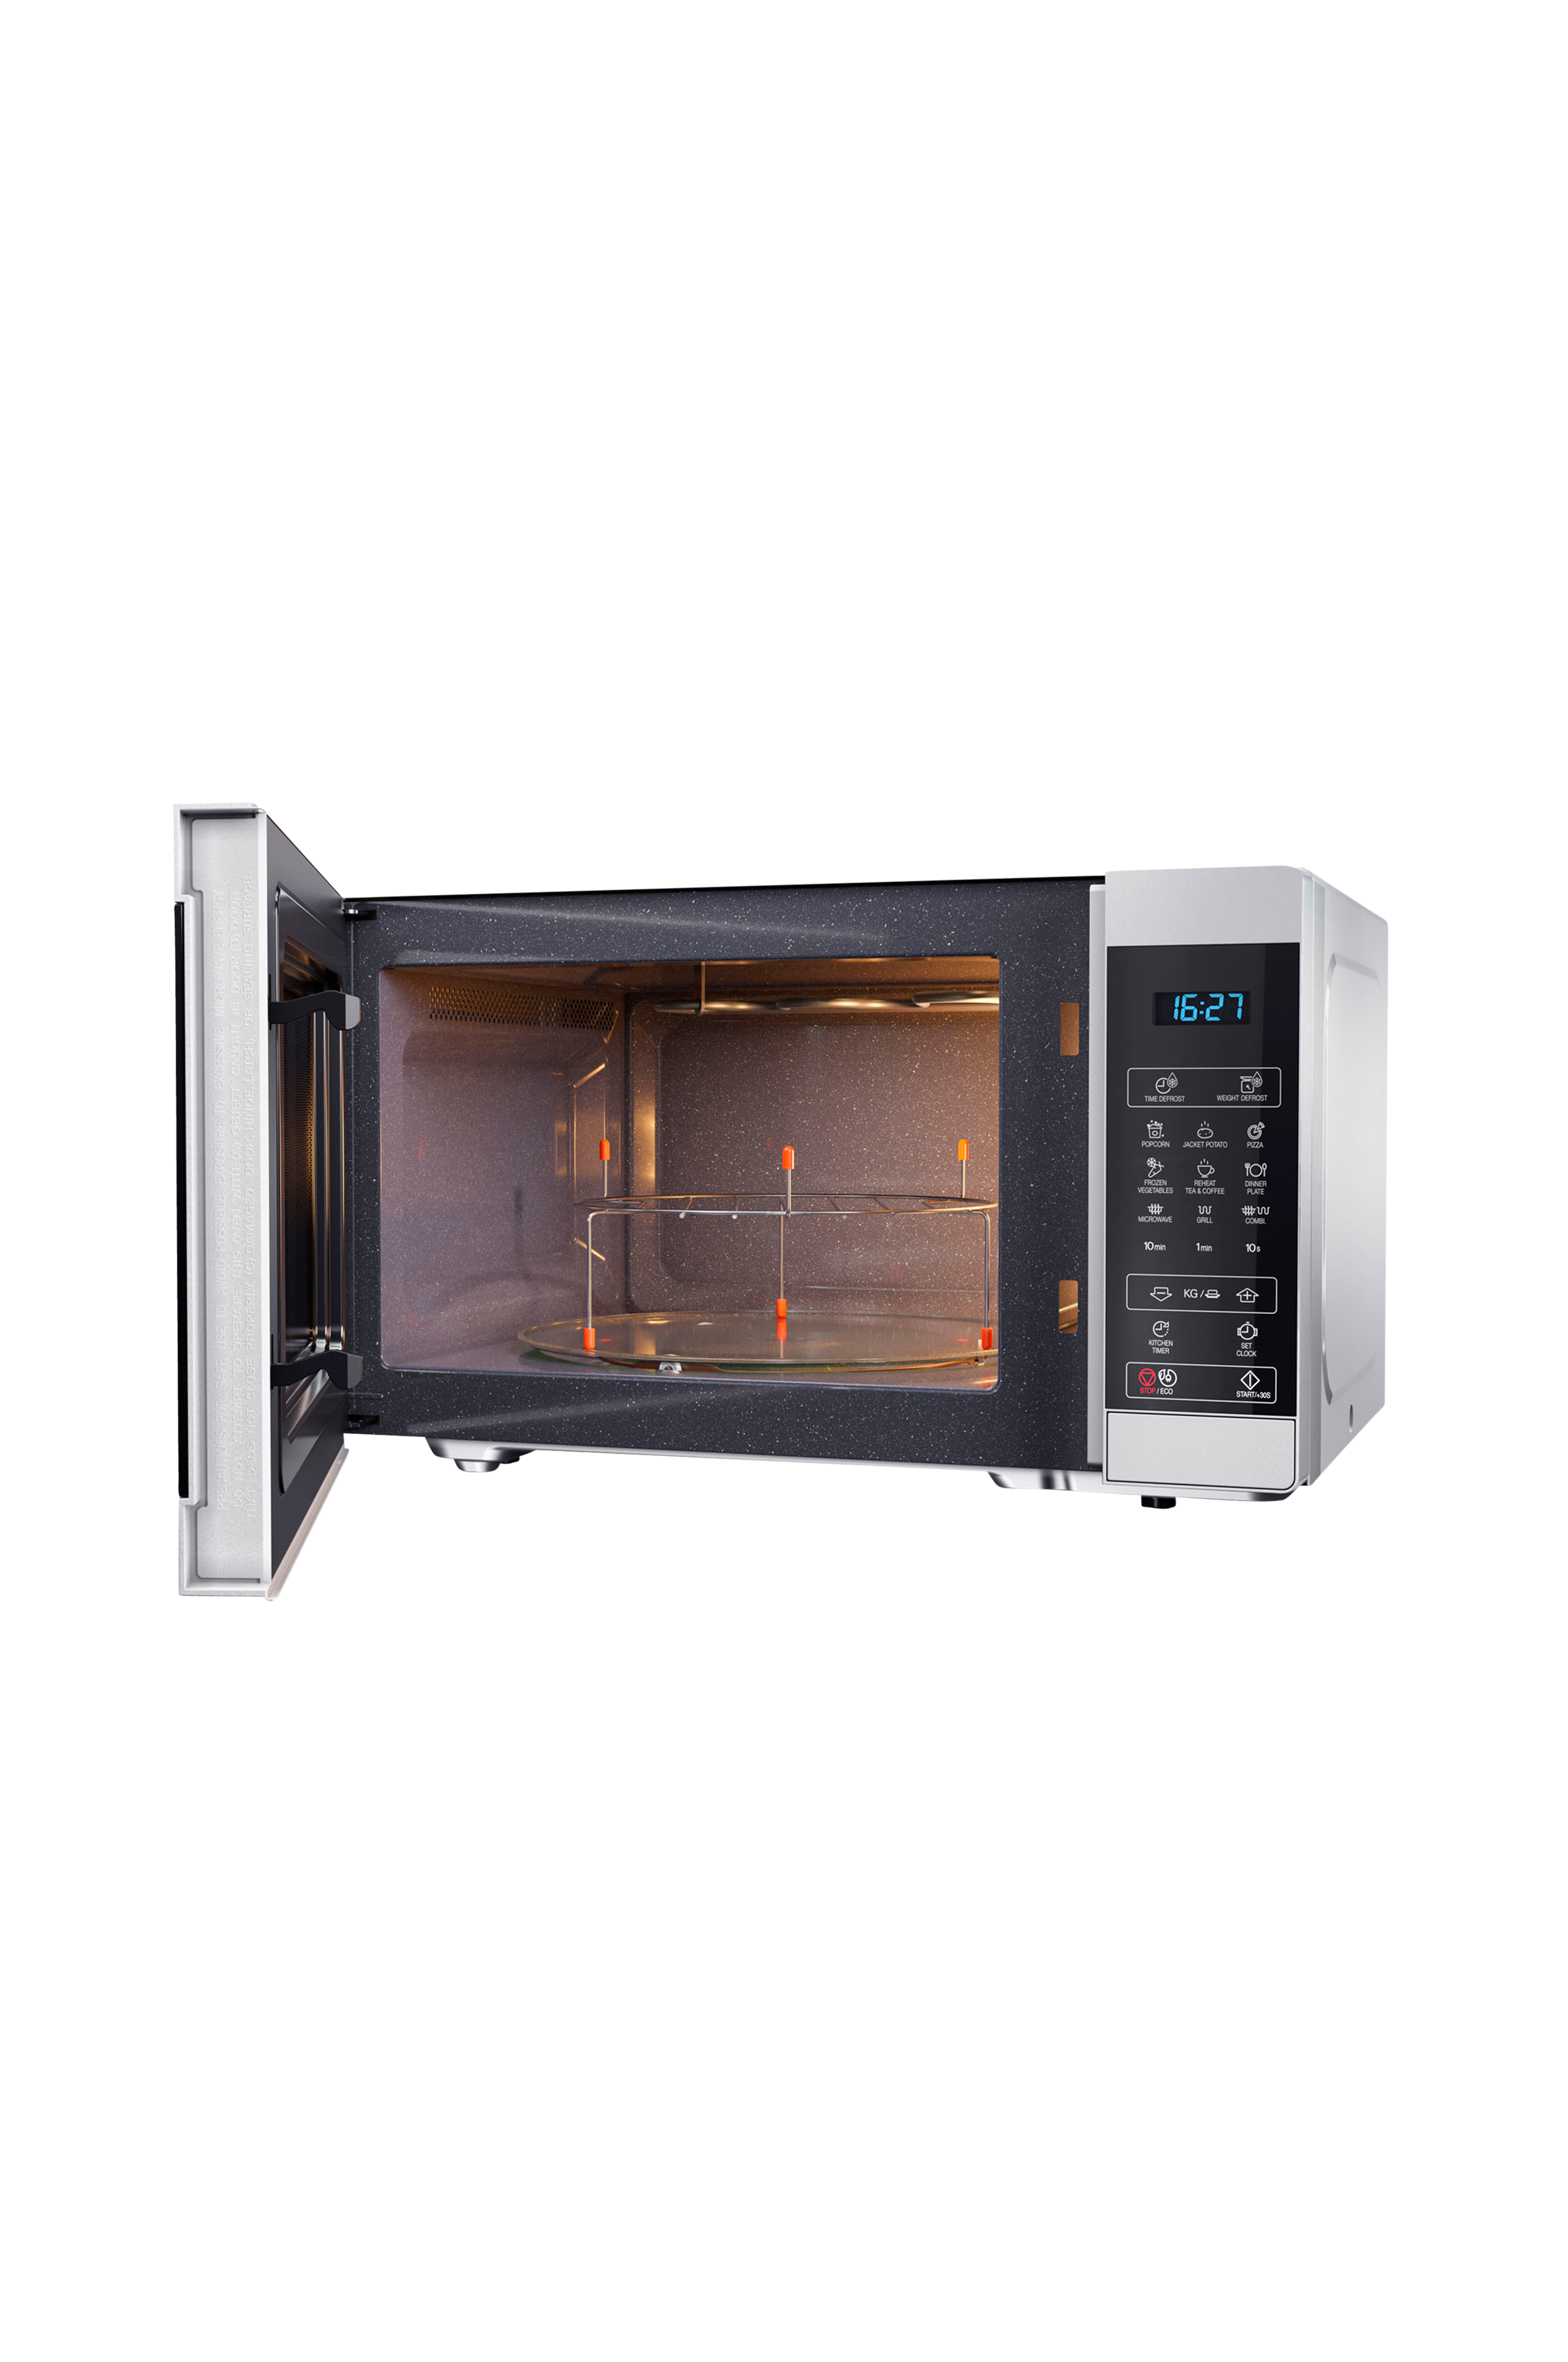 Touch Control Microwave with 1100W Grill & Ceramic Enamel Interior White SHARP YC-MG81U-W 28L 900W Digital 